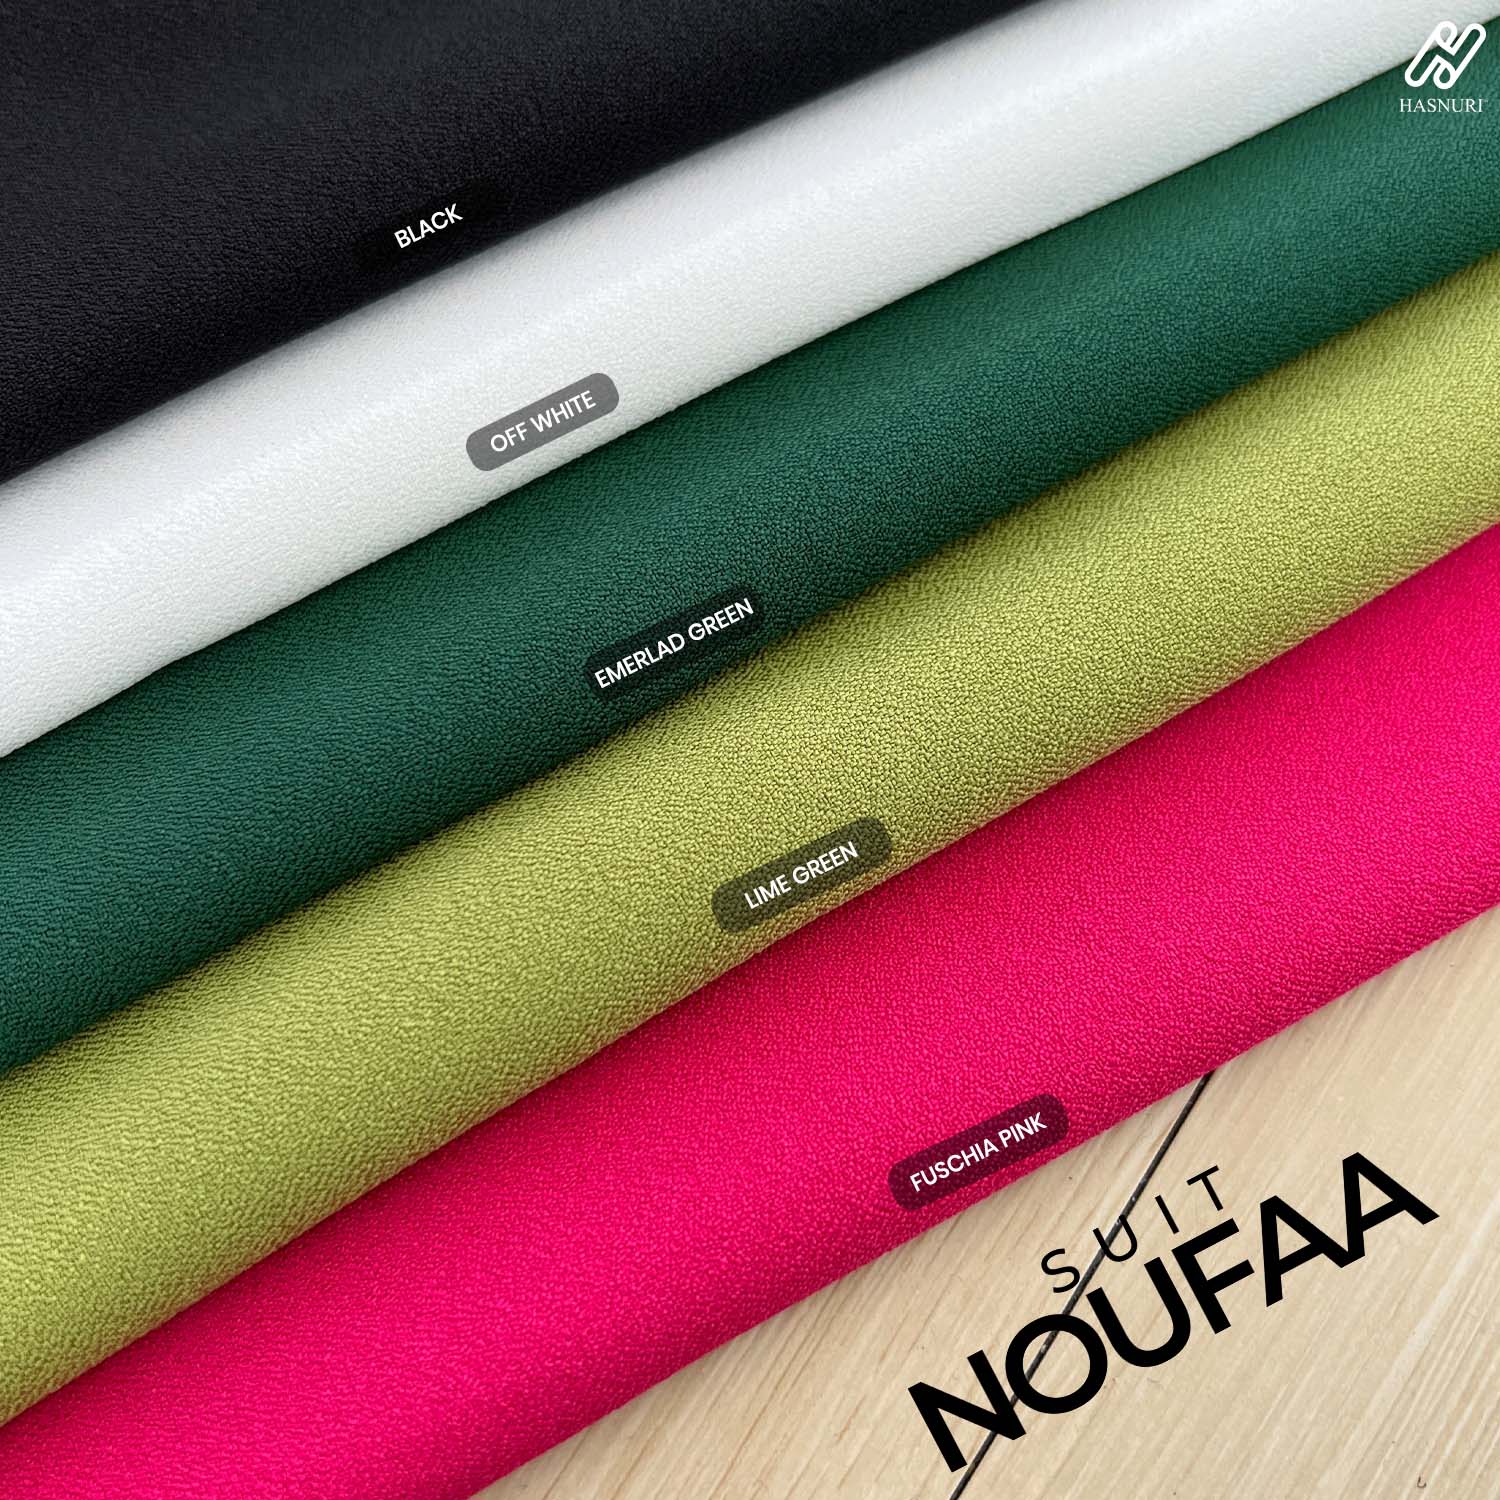 Suit Noufaa - Emerald Green